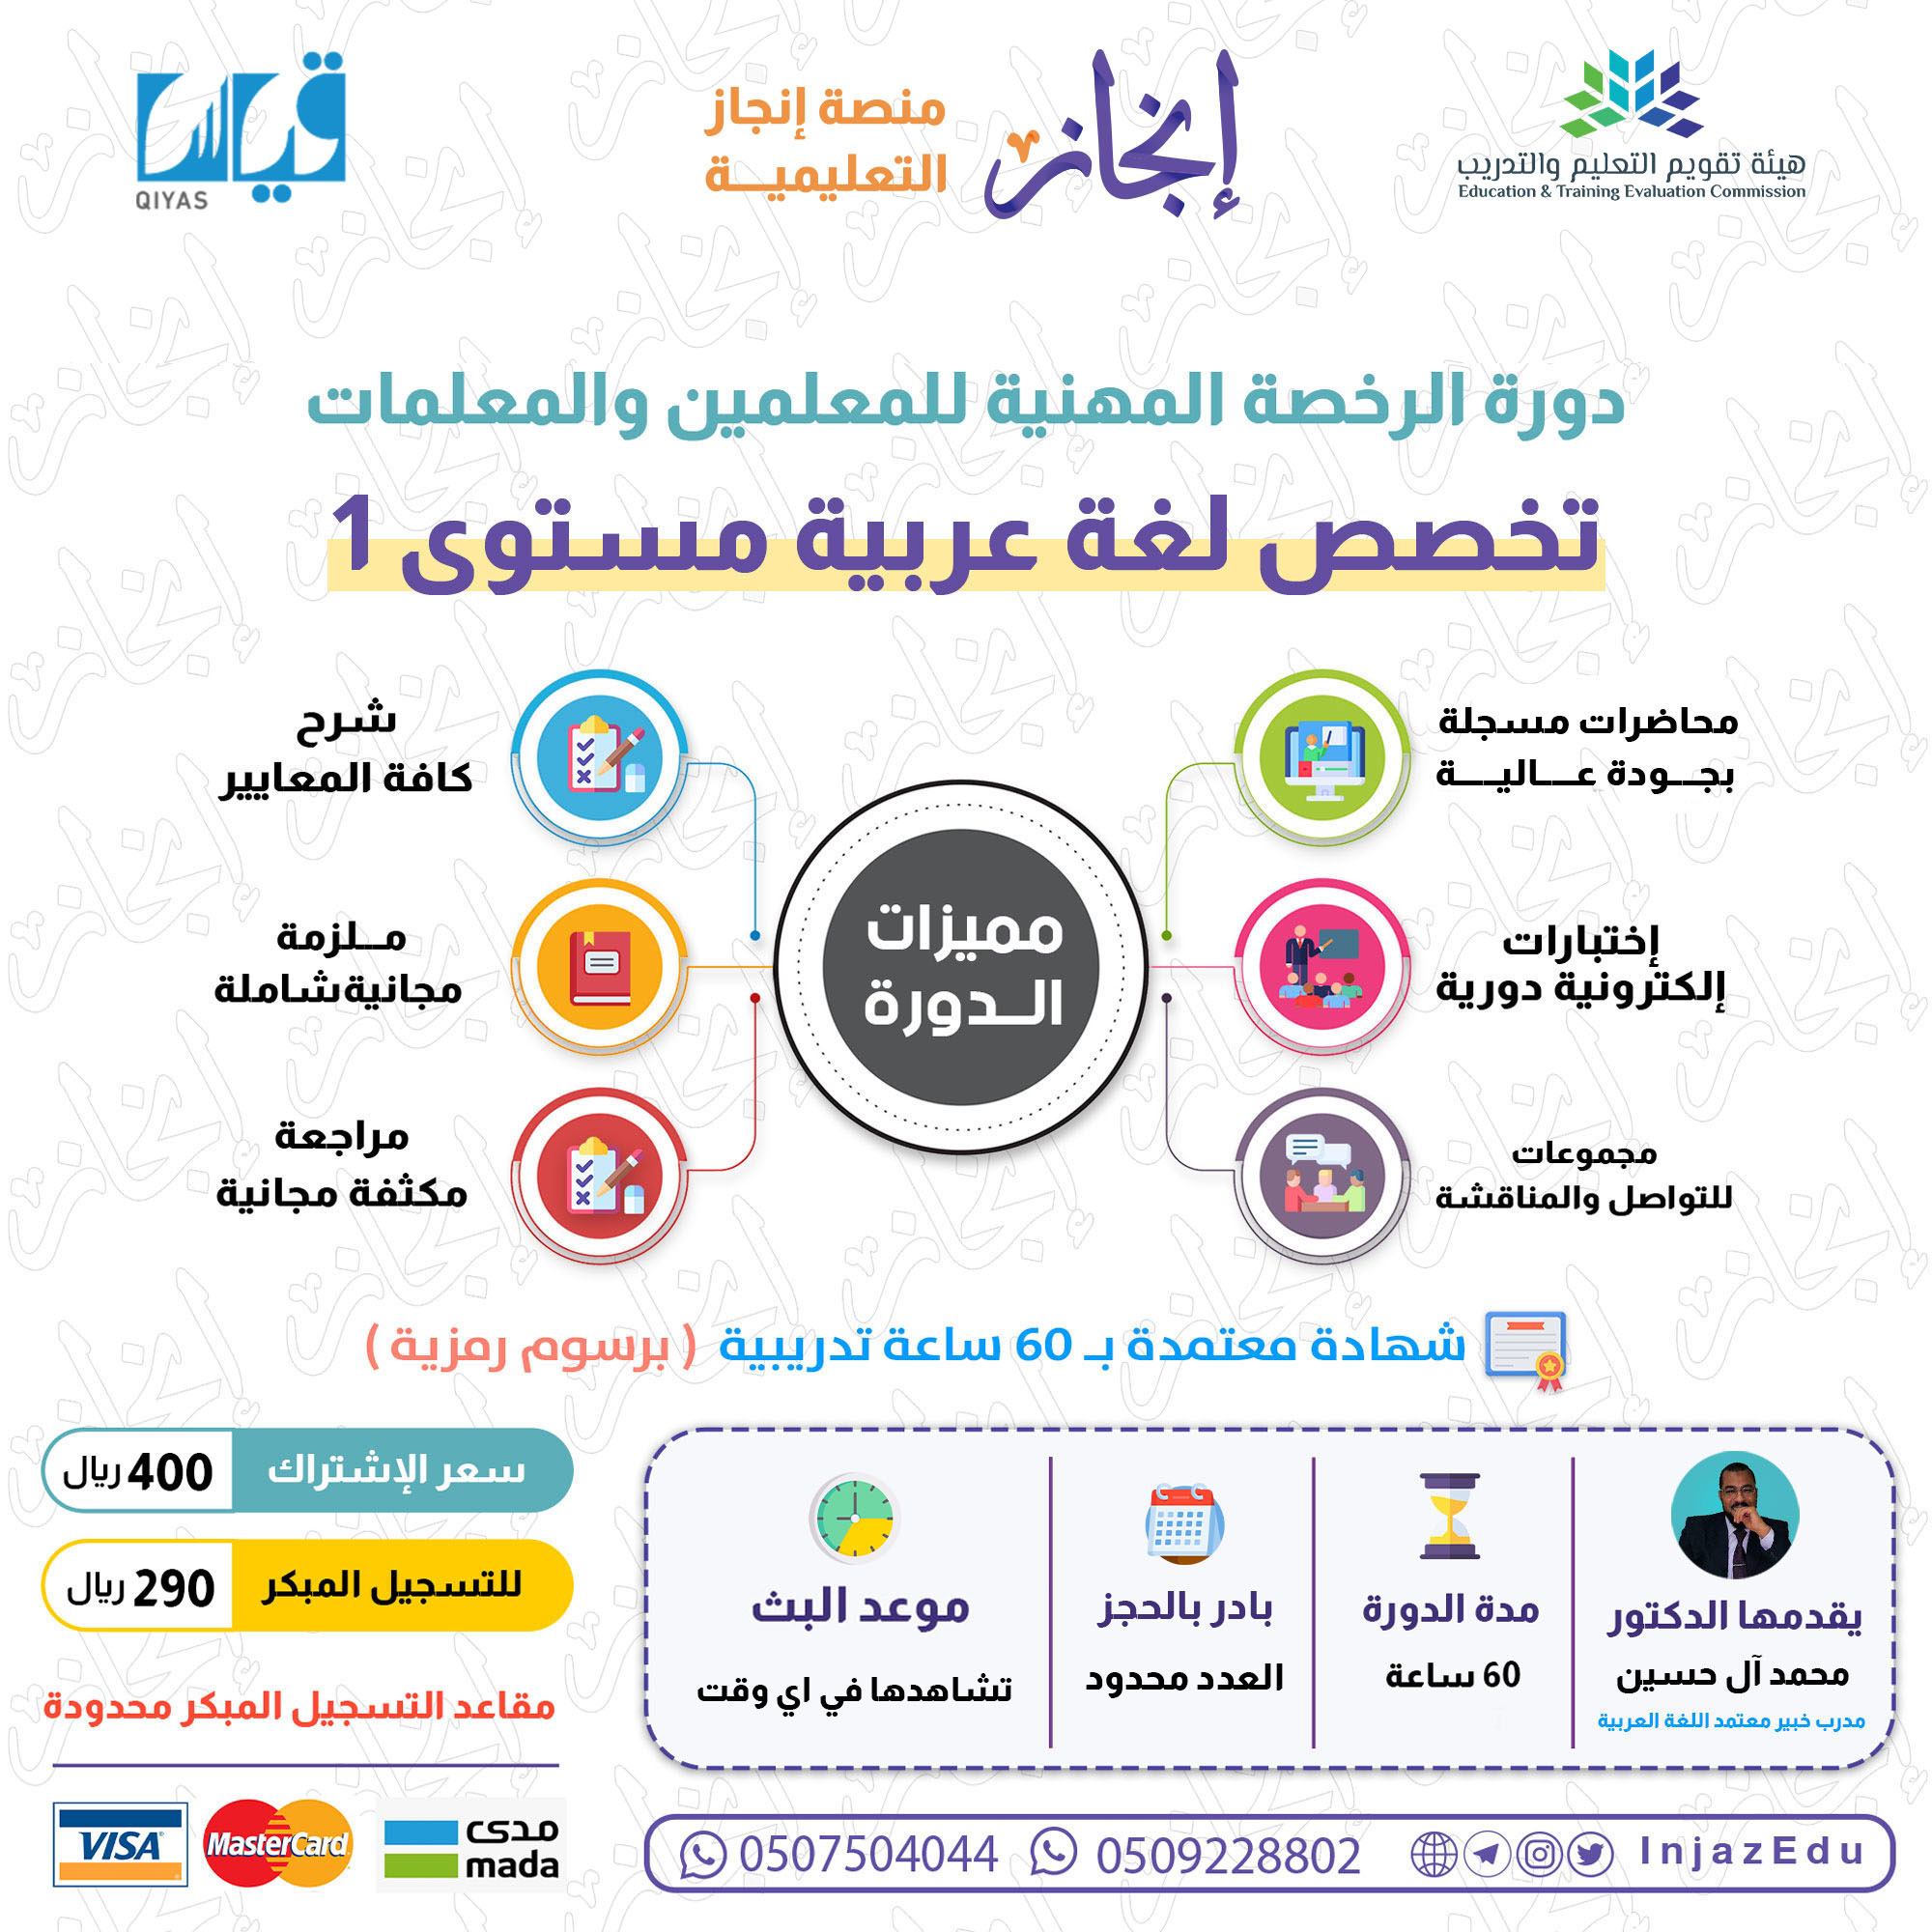 دورة الرخصة المهنية اللغة العربية (1)  ( مسجلة )